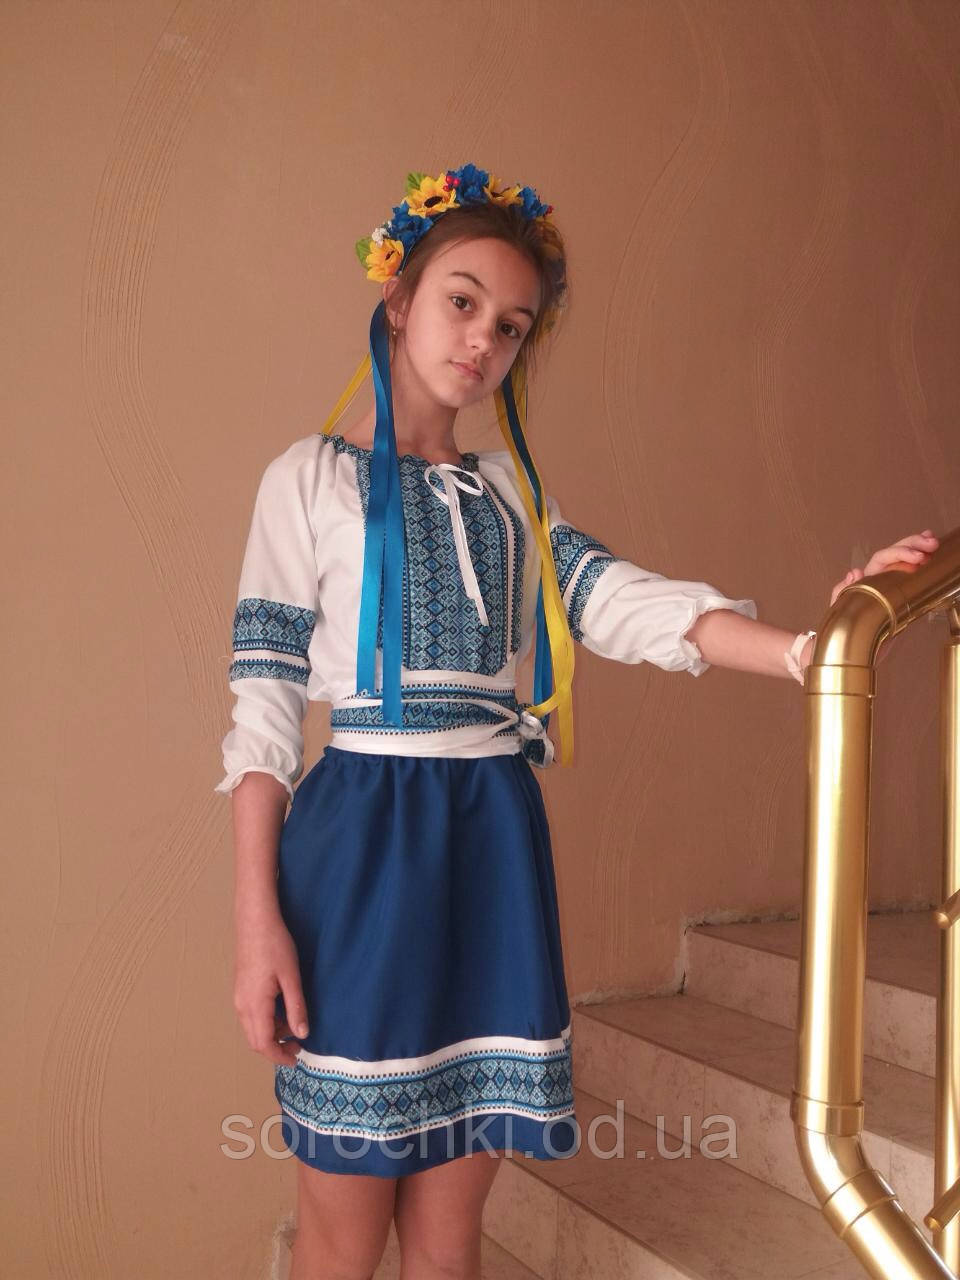 Український національний костюм для дівчинки, матеріал поплін, габардин